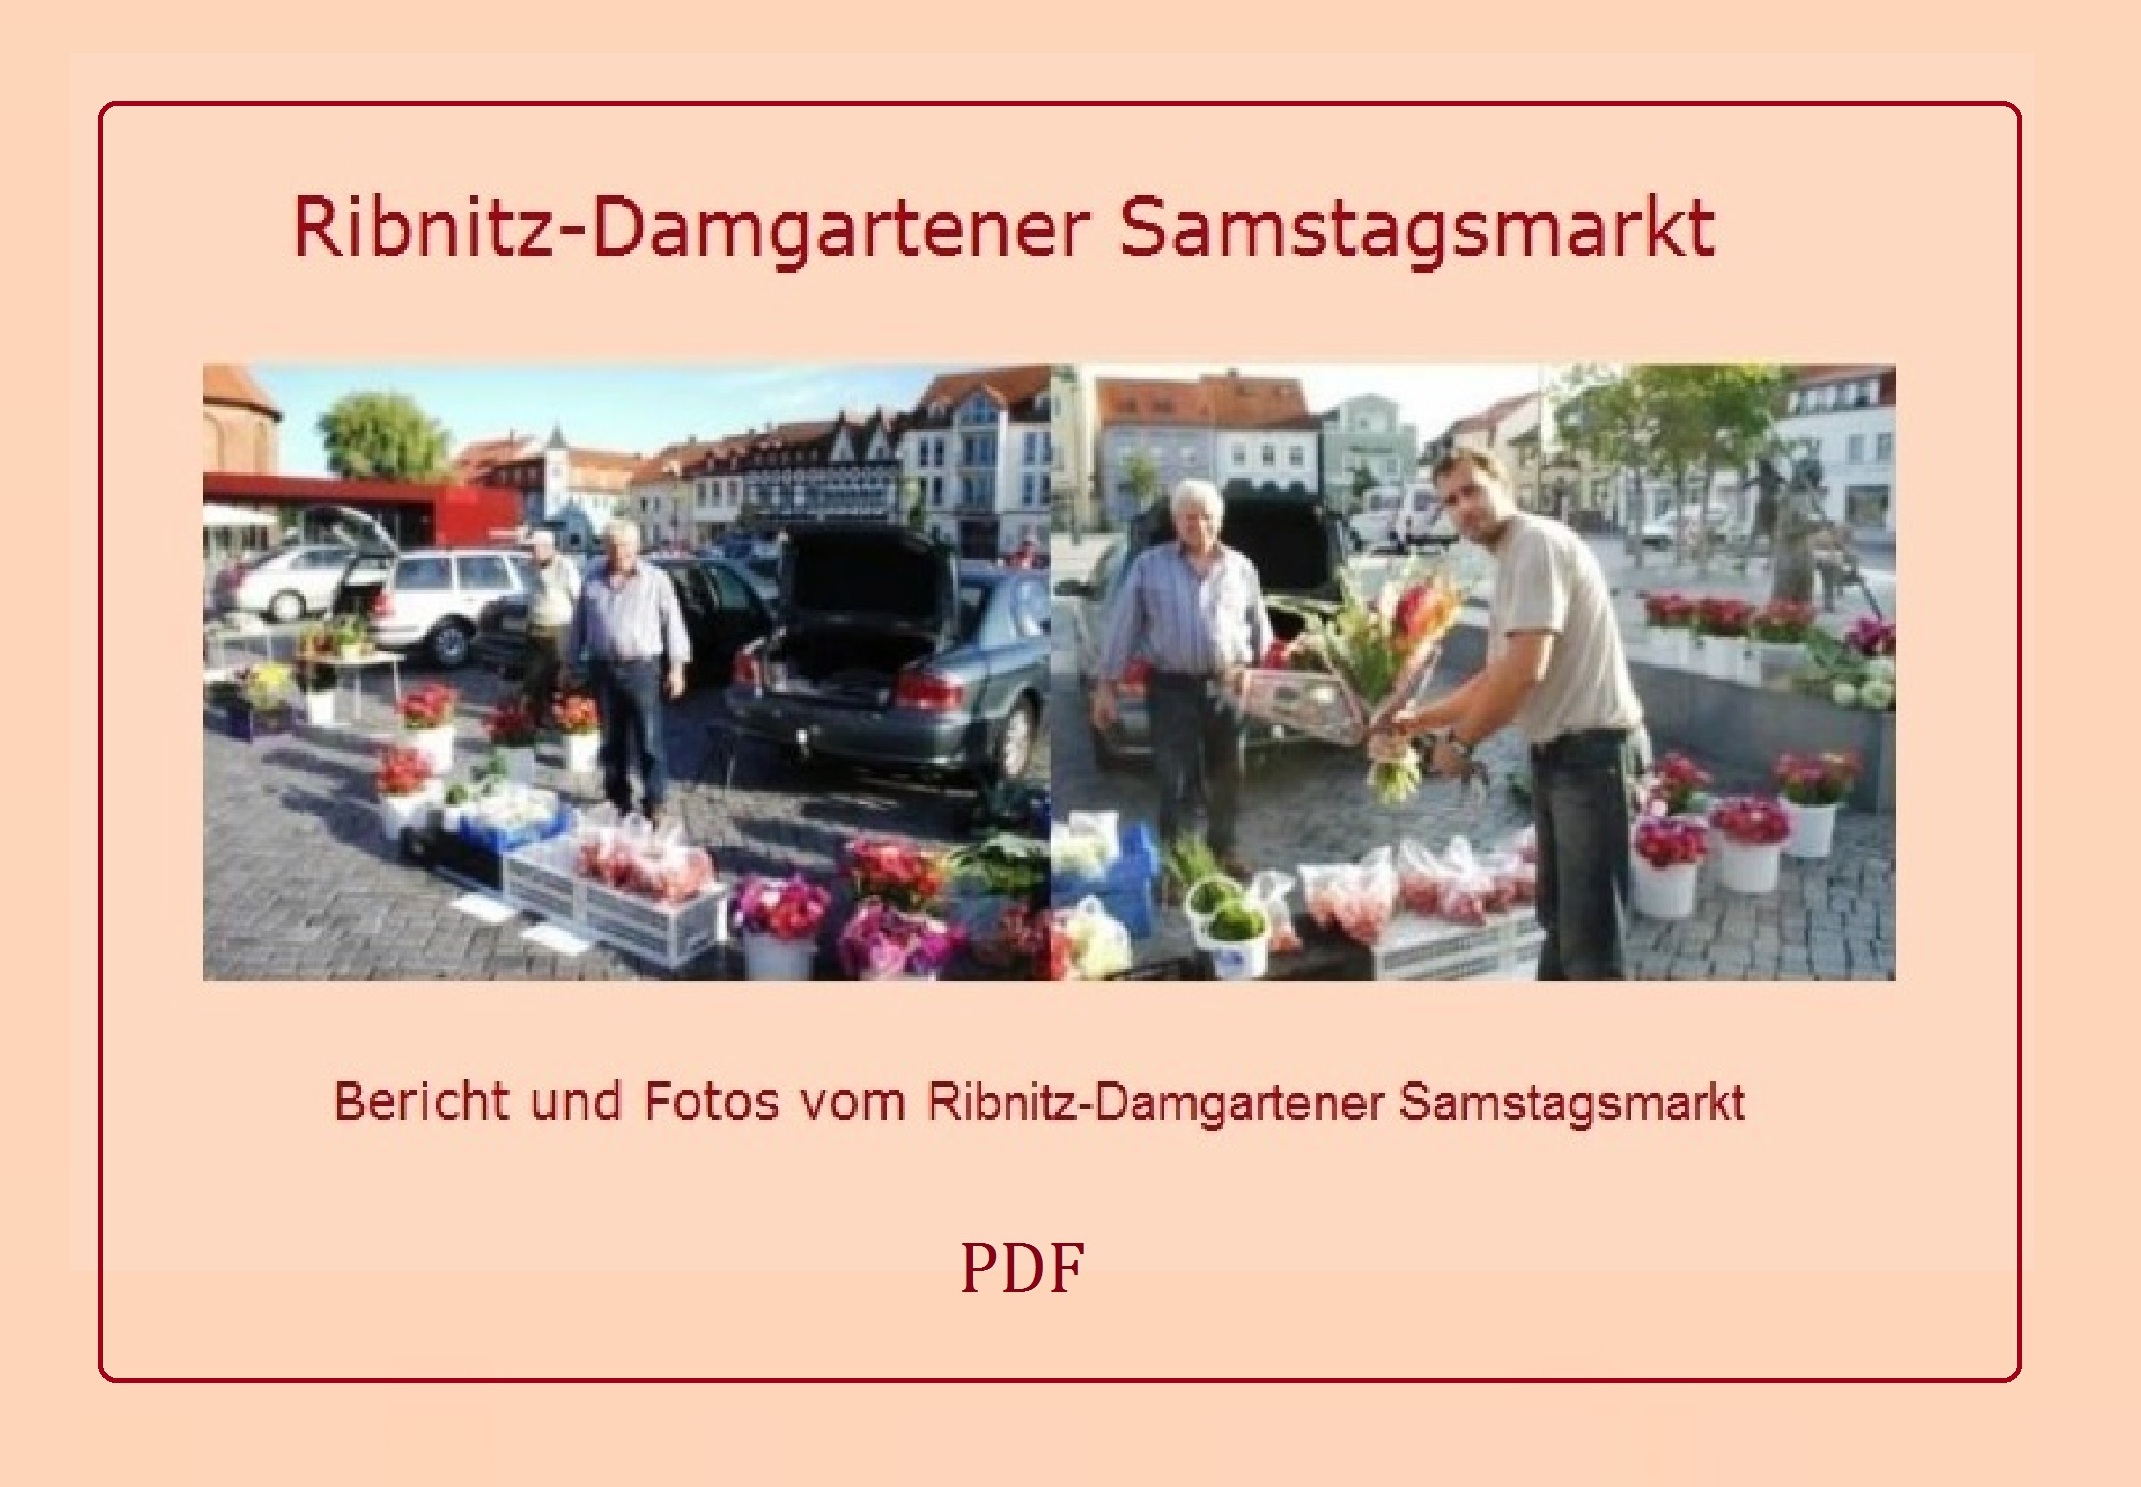 Ribnitz-Damgartener Samstagsmarkt - Bericht und Fotos vom Ribnitz-Damgartener Samstagsmarkt - Der Ribnitz-Damgartener Samstagsmarkt wird immer beliebter! - PDF